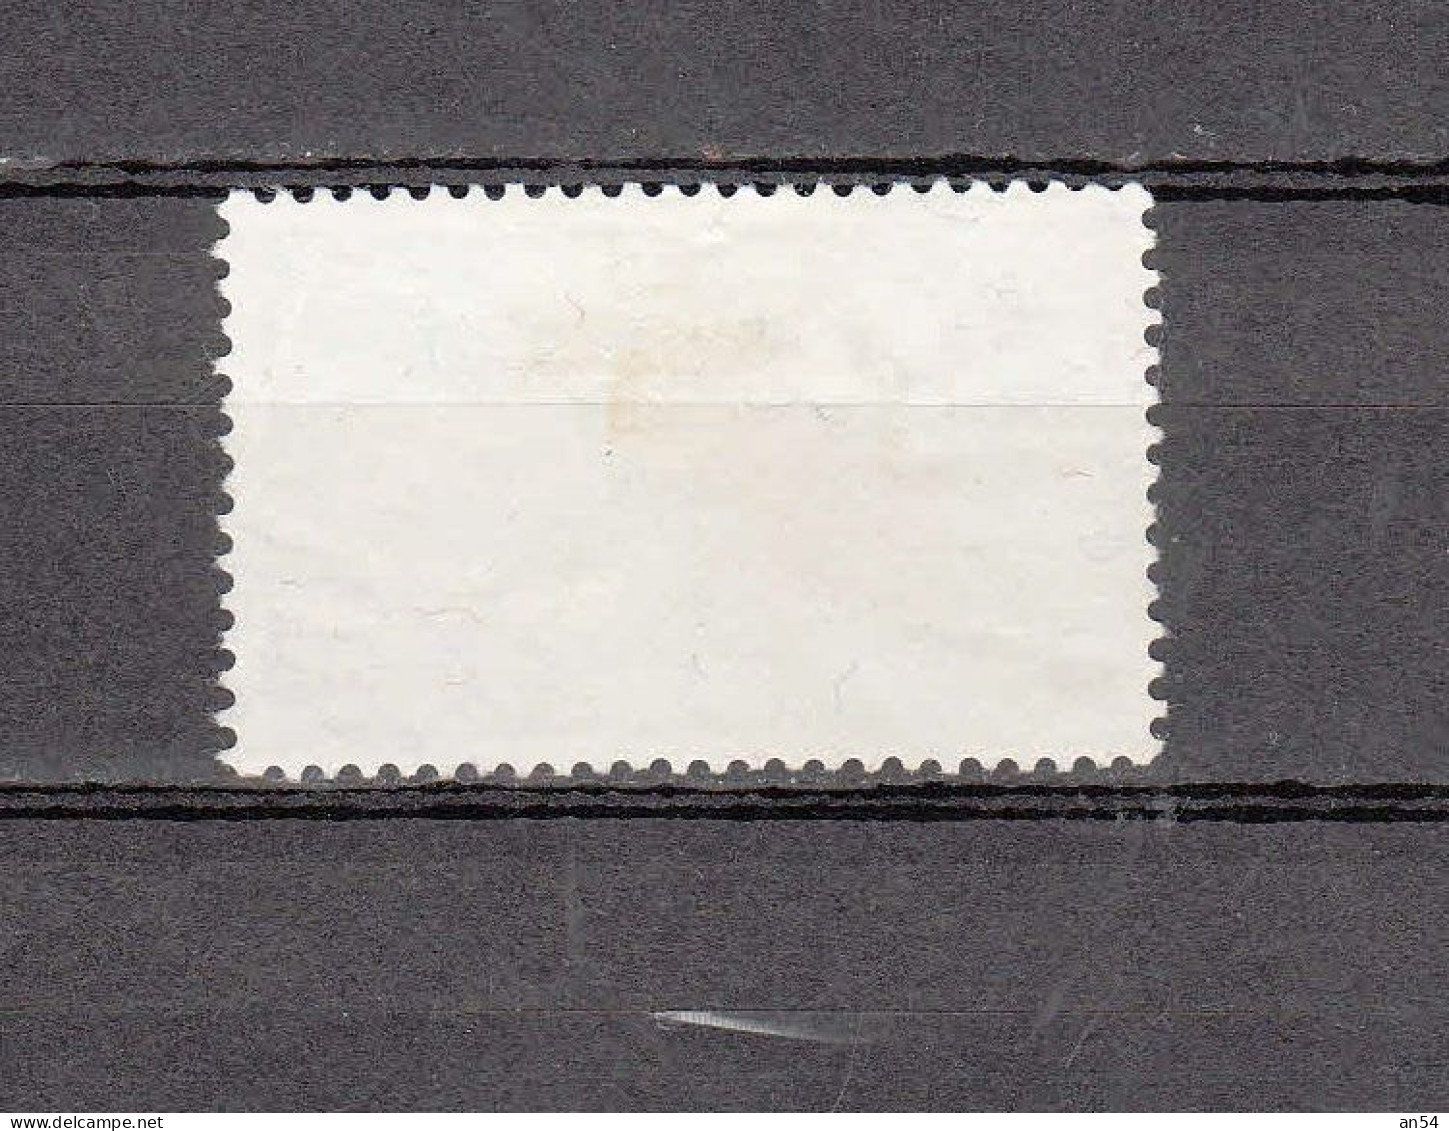 1947   Variété Rayon Manquant  N°  277 Pf.277.2.01   OBLITERE  ( COTE 250.00 )    CATALOGUE SBK - Errores & Curiosidades